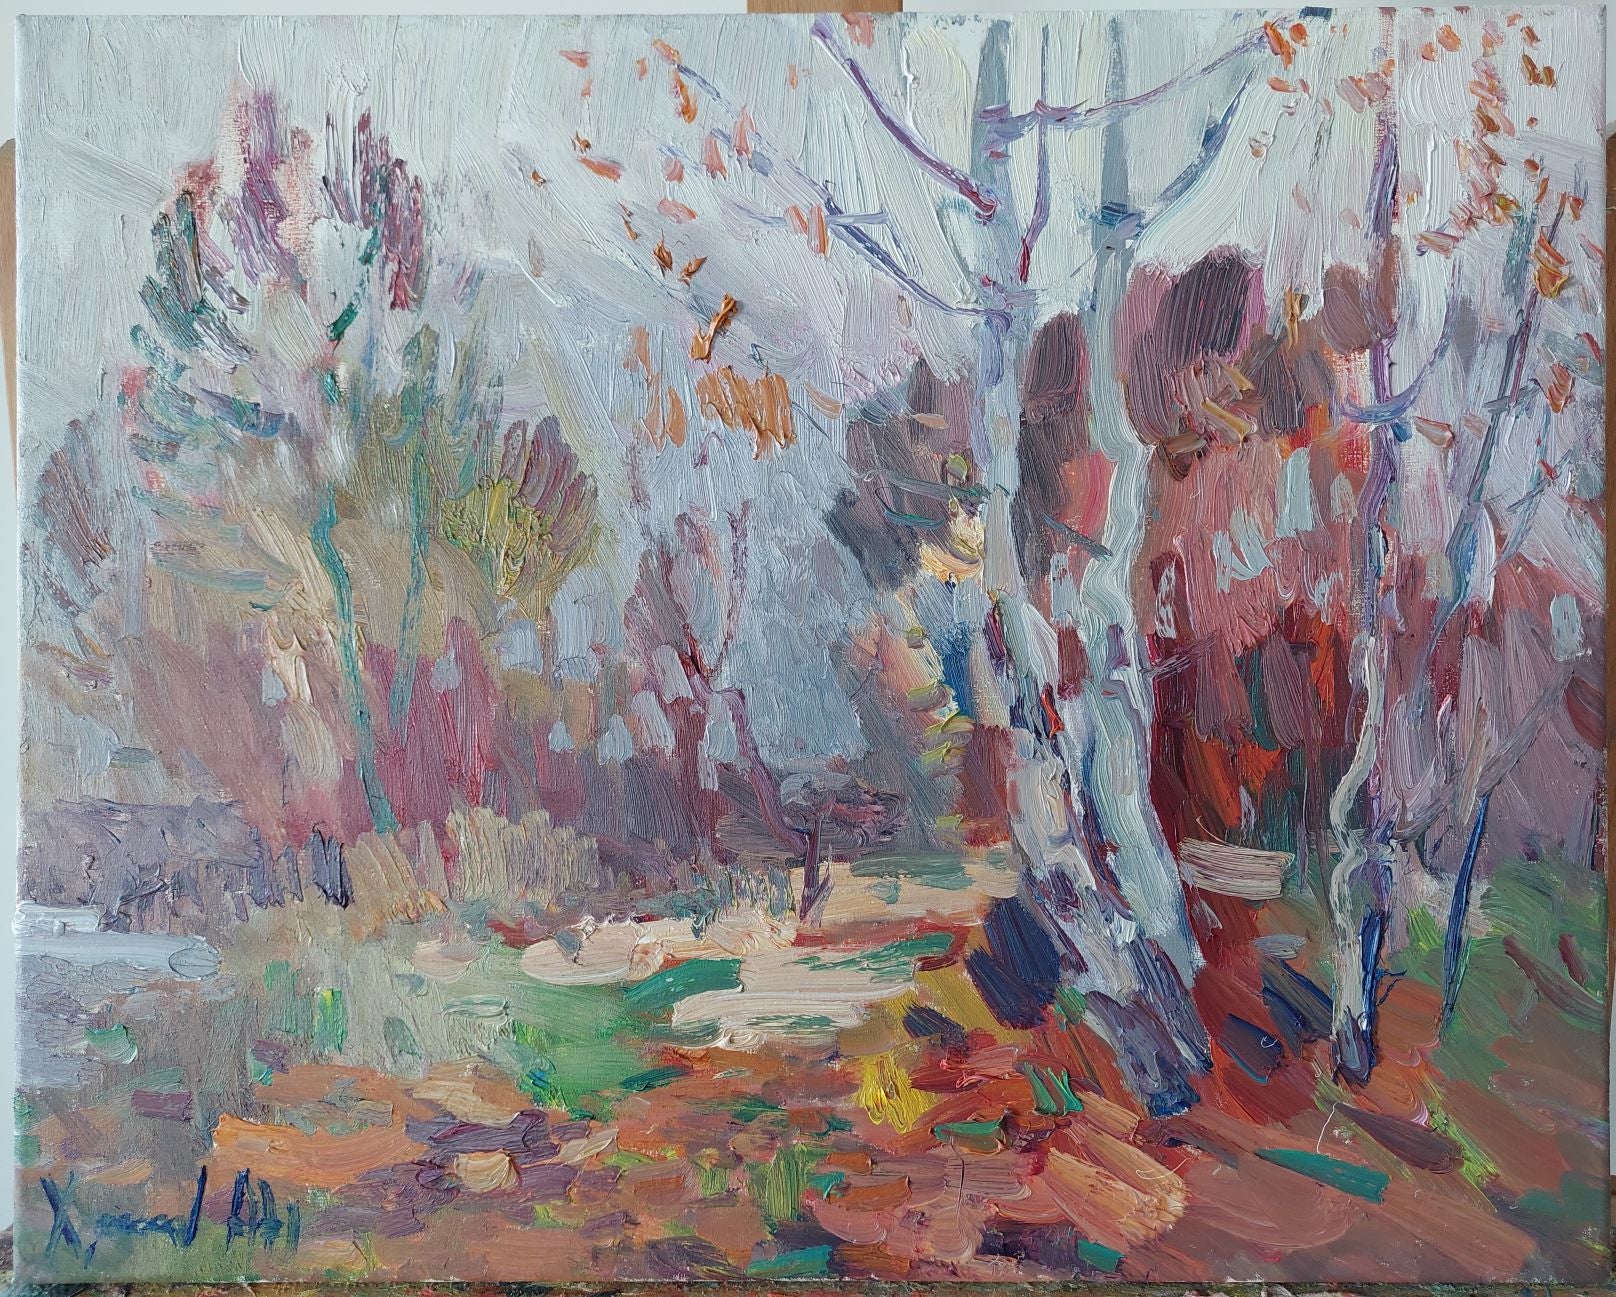 Birches (2020) by Oleksandr Khrapachov